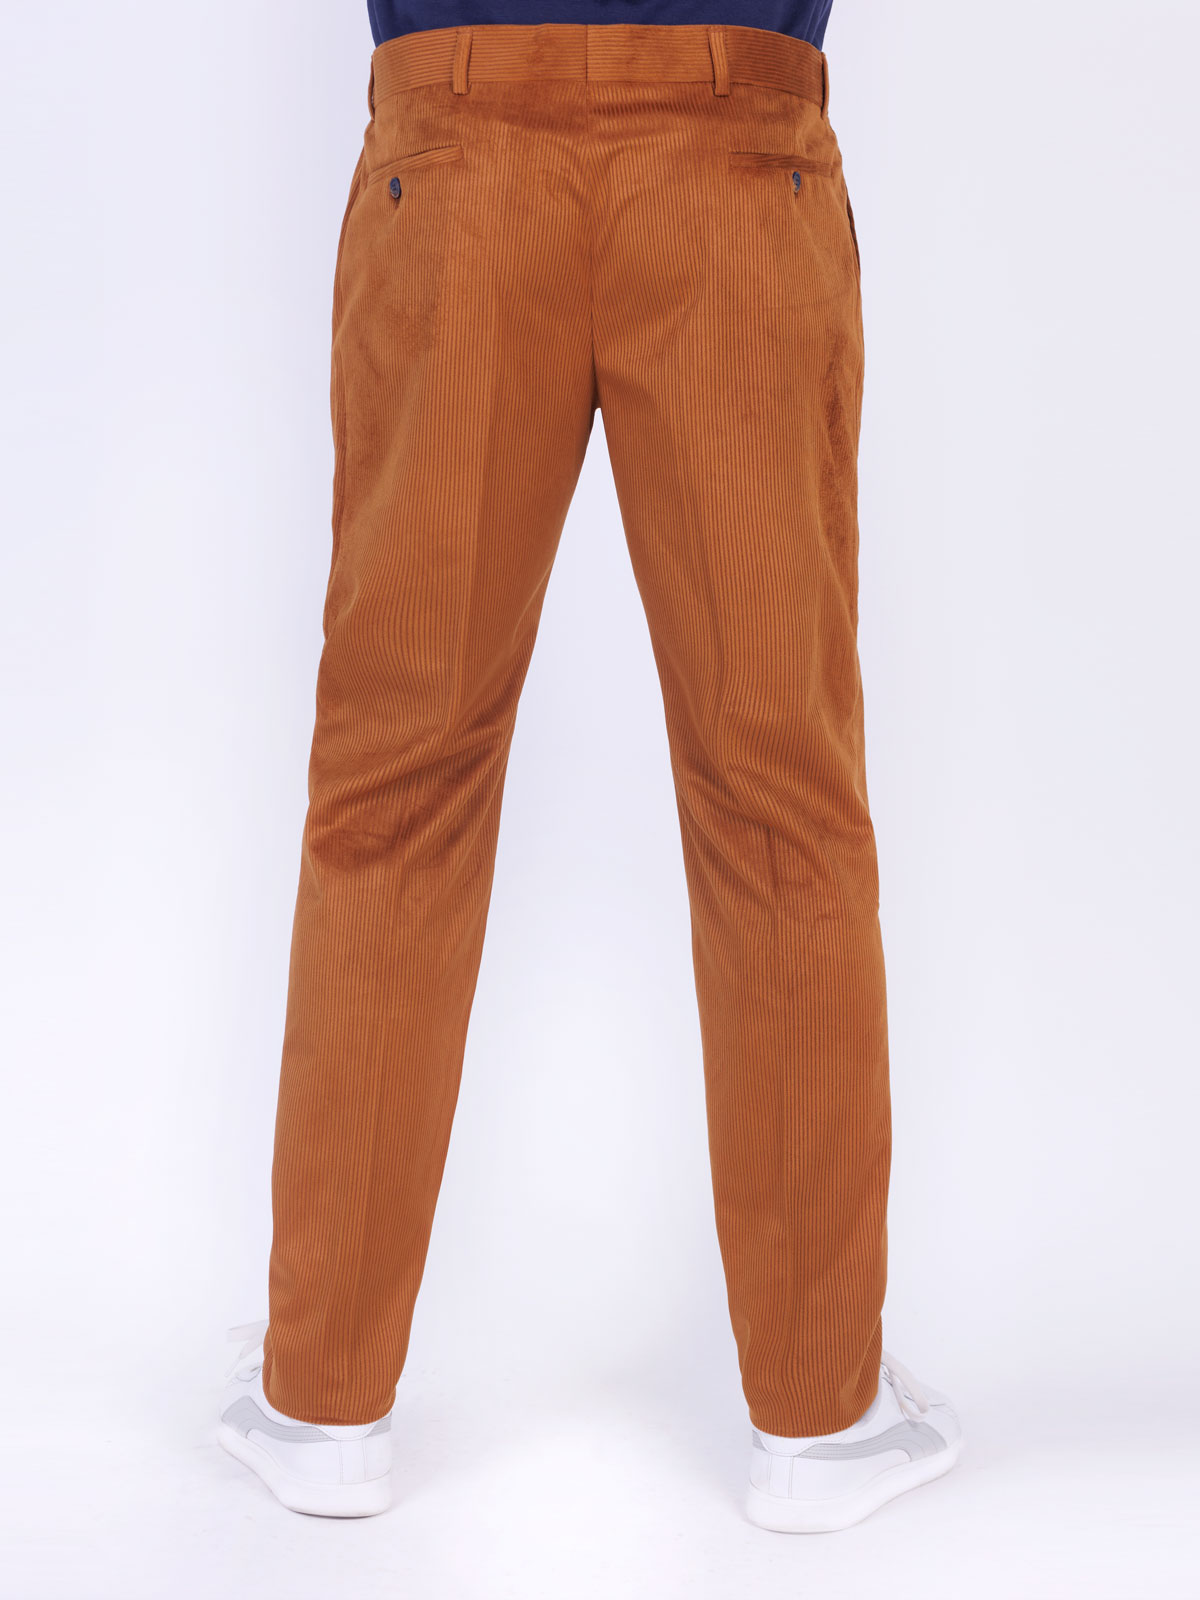 Ανδρικό παντελόνι σε μουσταρδί χρώμα - 60299 € 44.43 img2